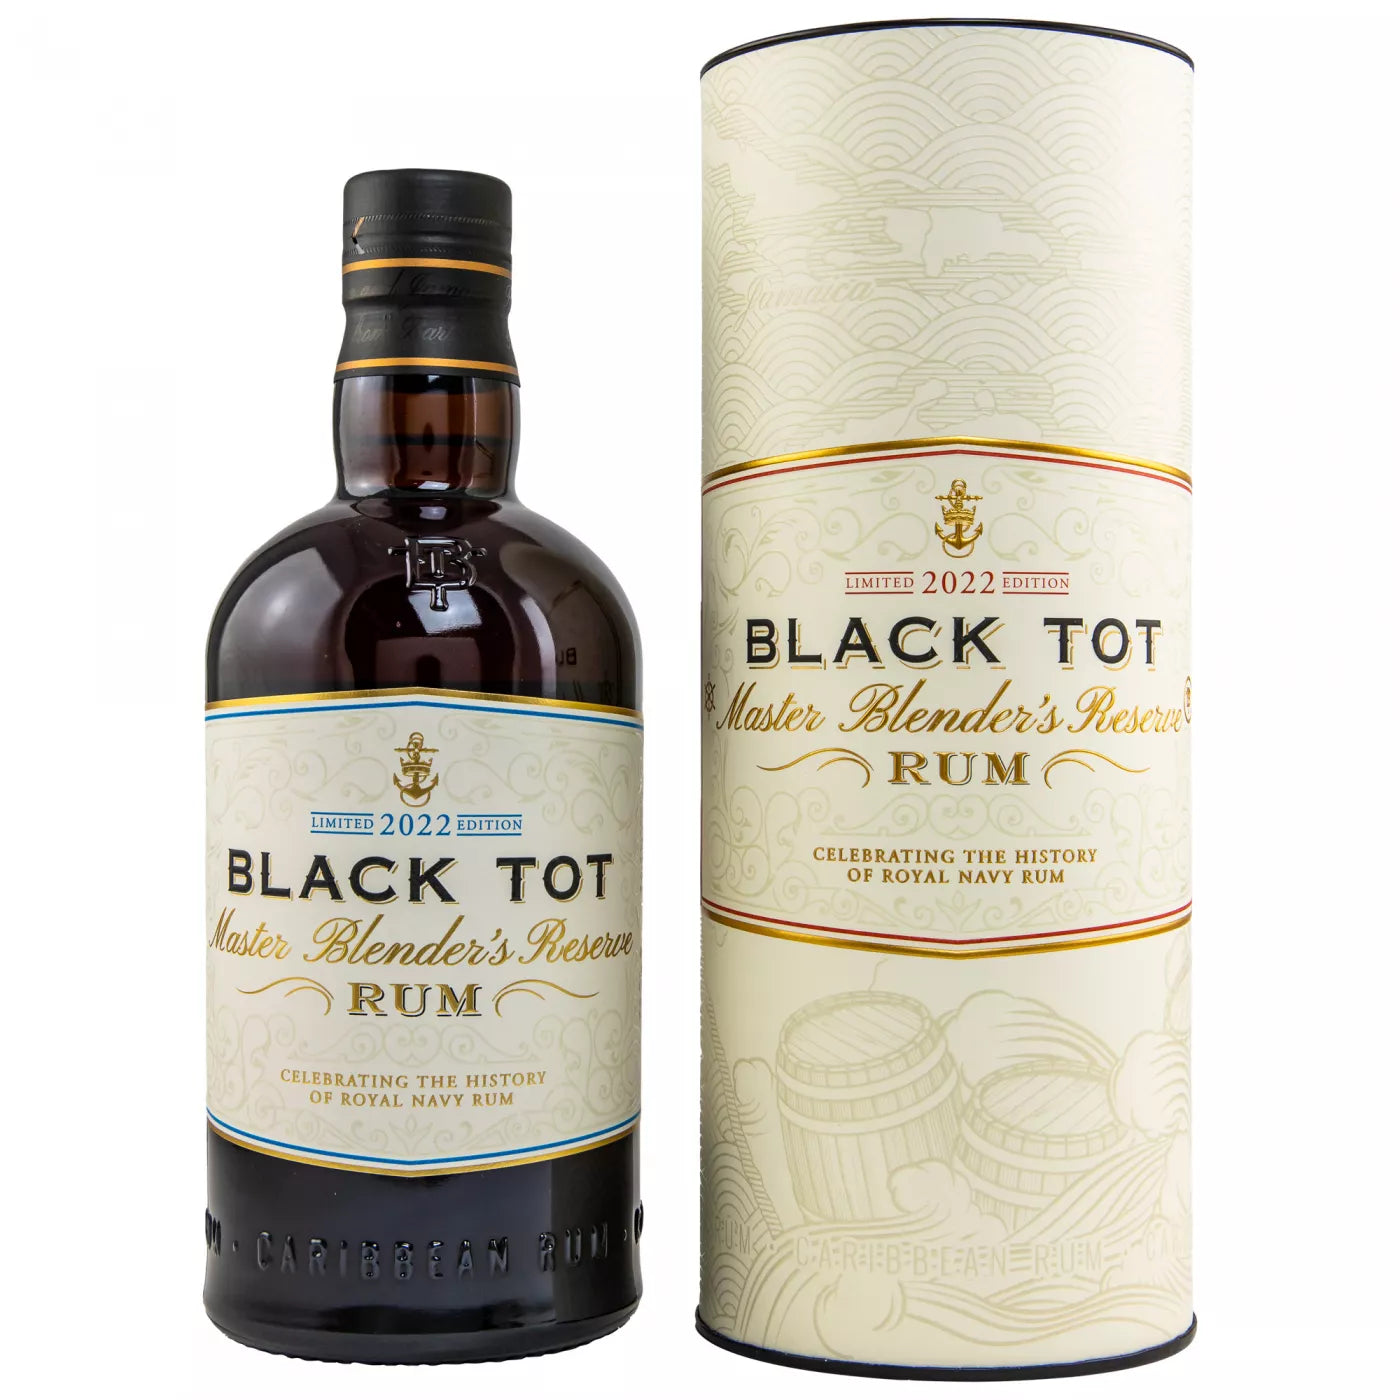 Black Tot Master Blender's Reserve Rum Limited Edition 2022 54,5%